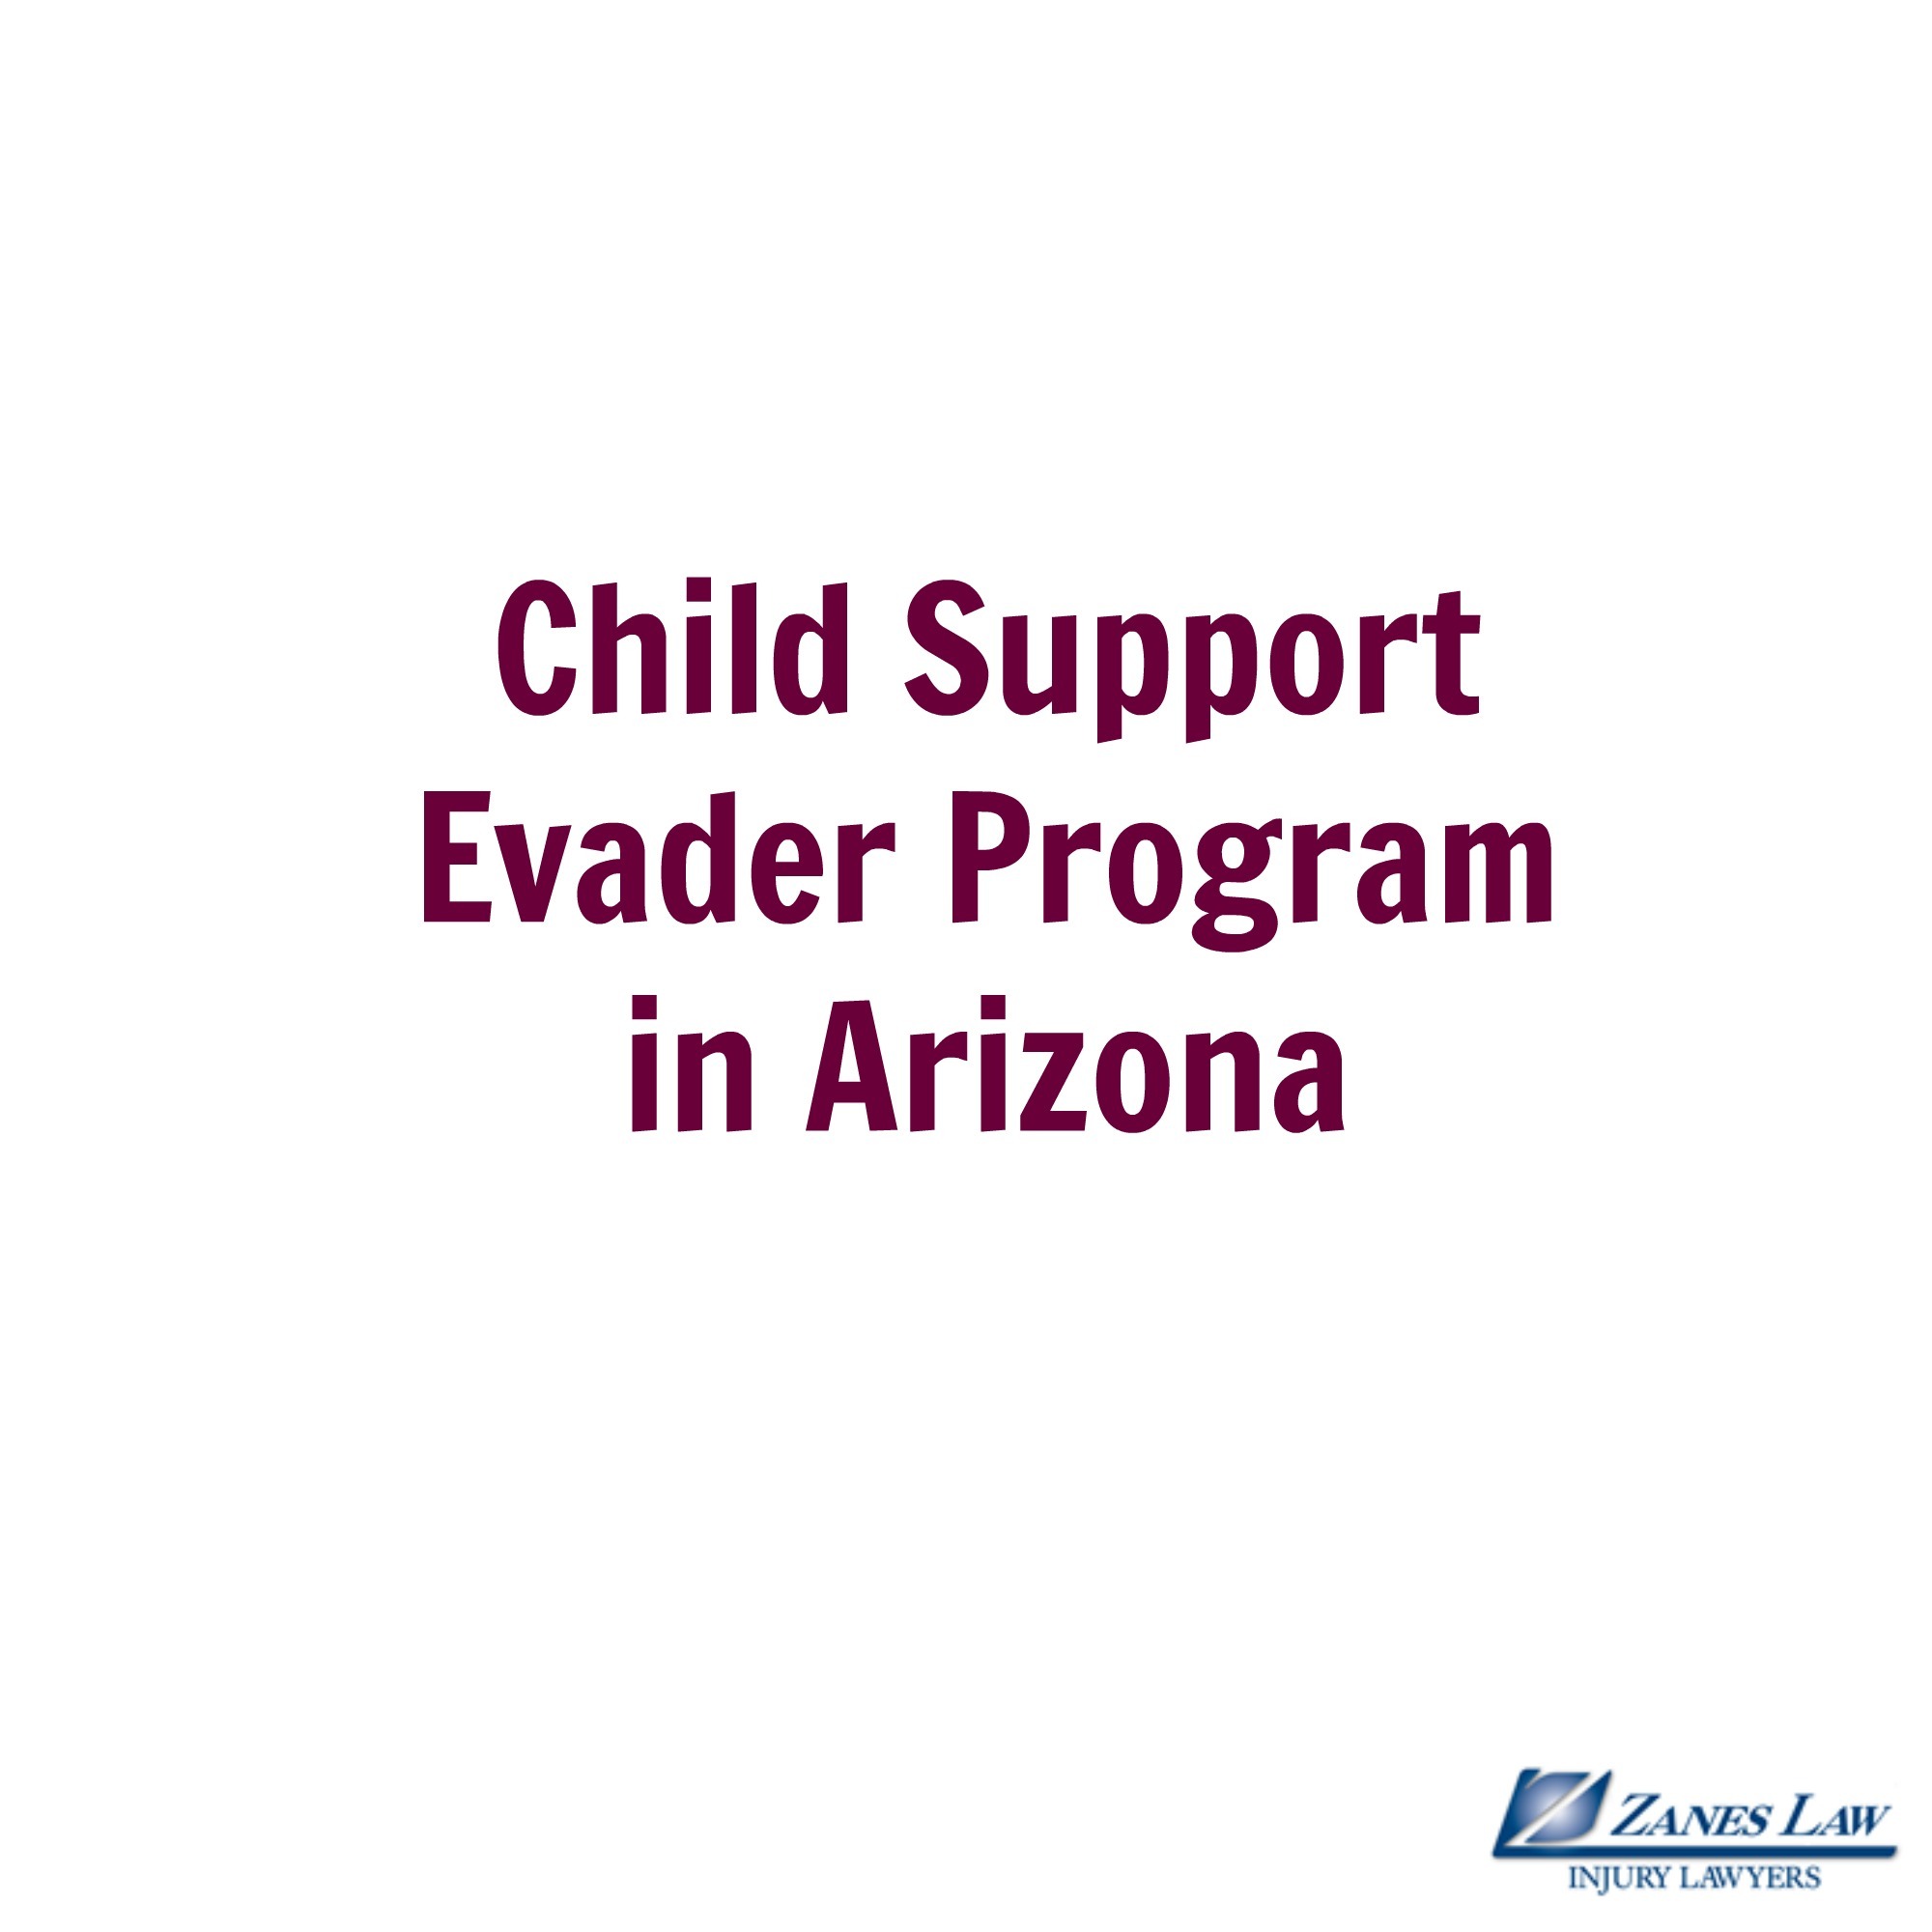 Child Support Evader Program in Arizona